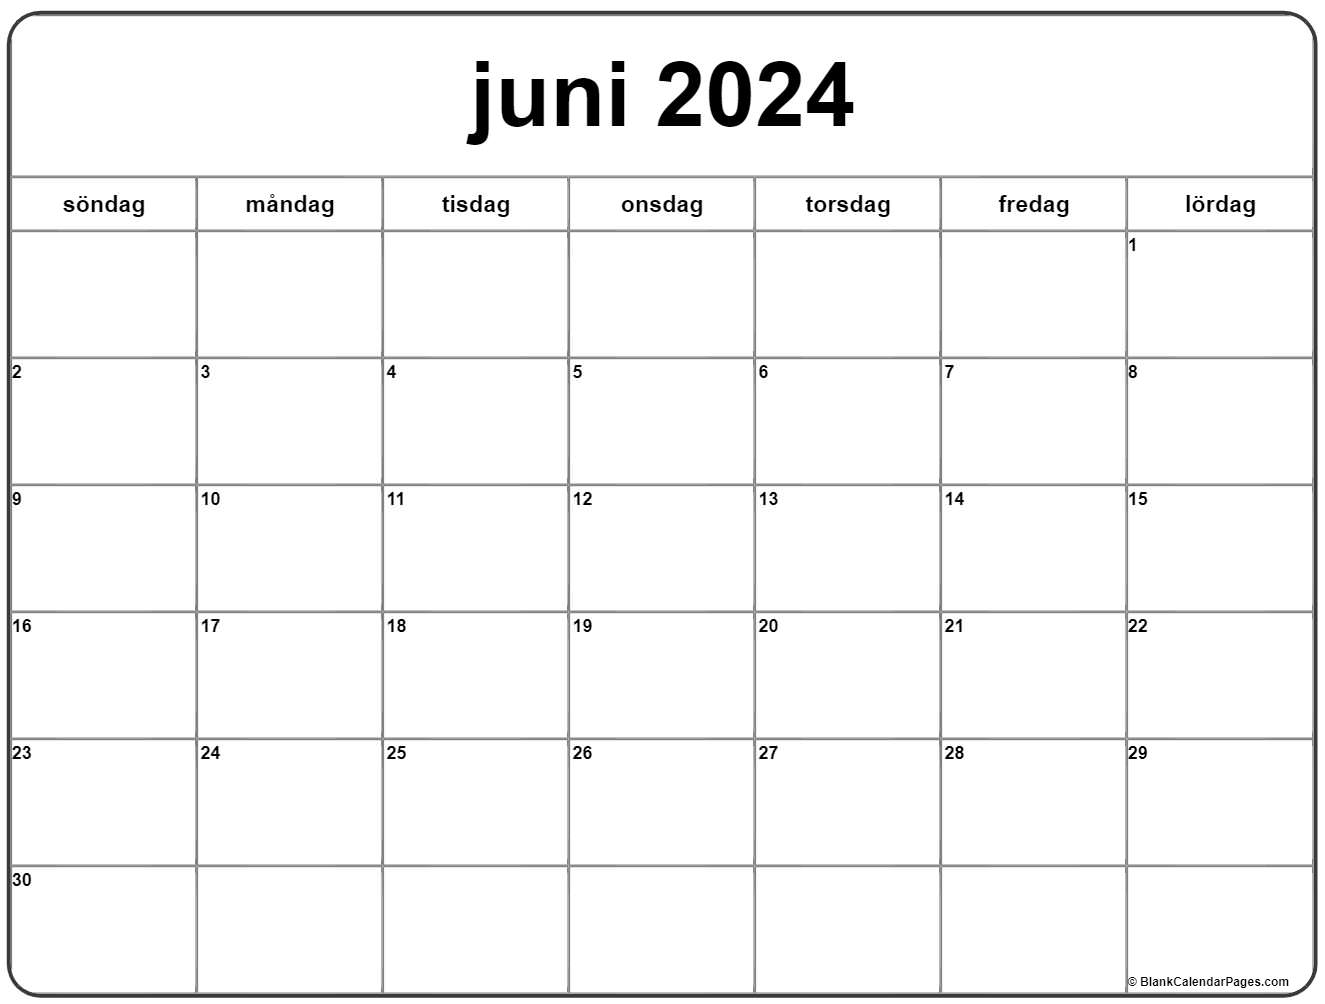 juni 2021 kalender Svenska | Kalender juni